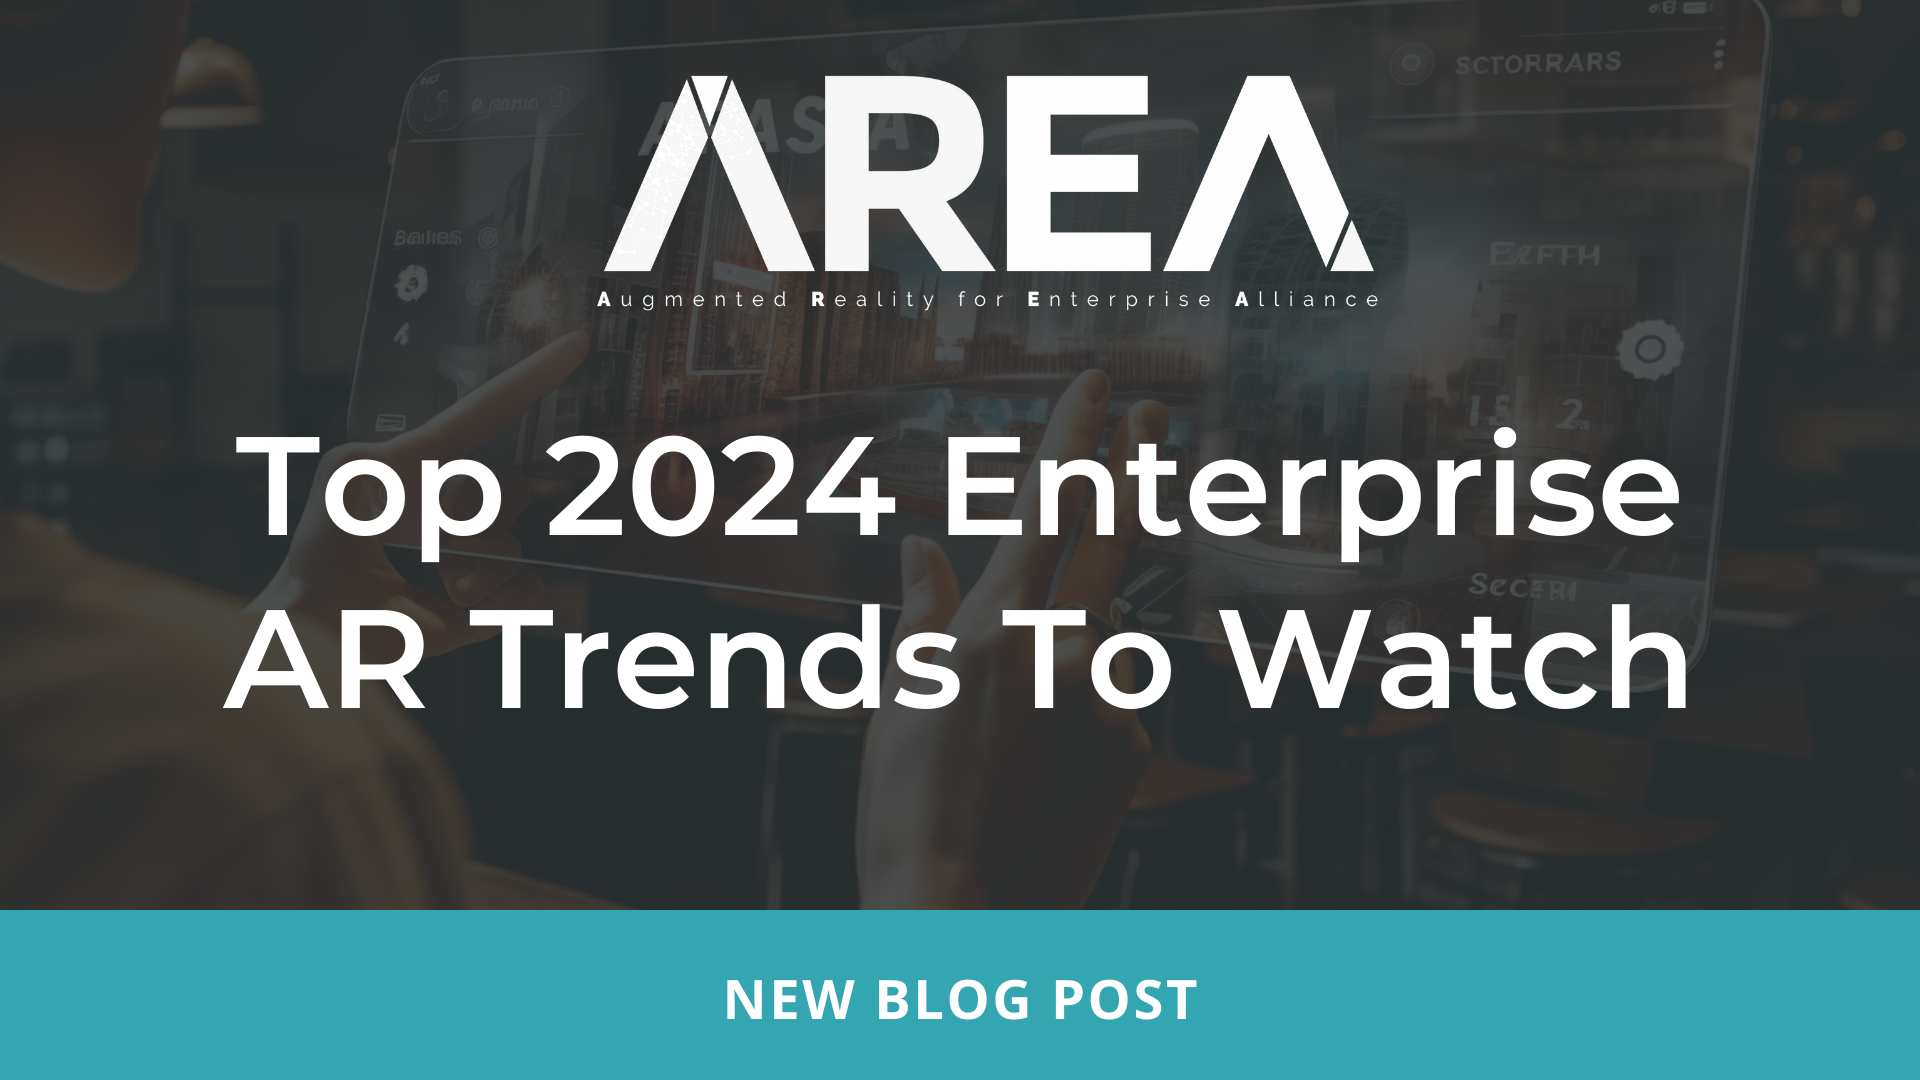 2024 انٹرپرائز اے آر کے سرفہرست رجحانات دیکھنے کے لیے - AREA